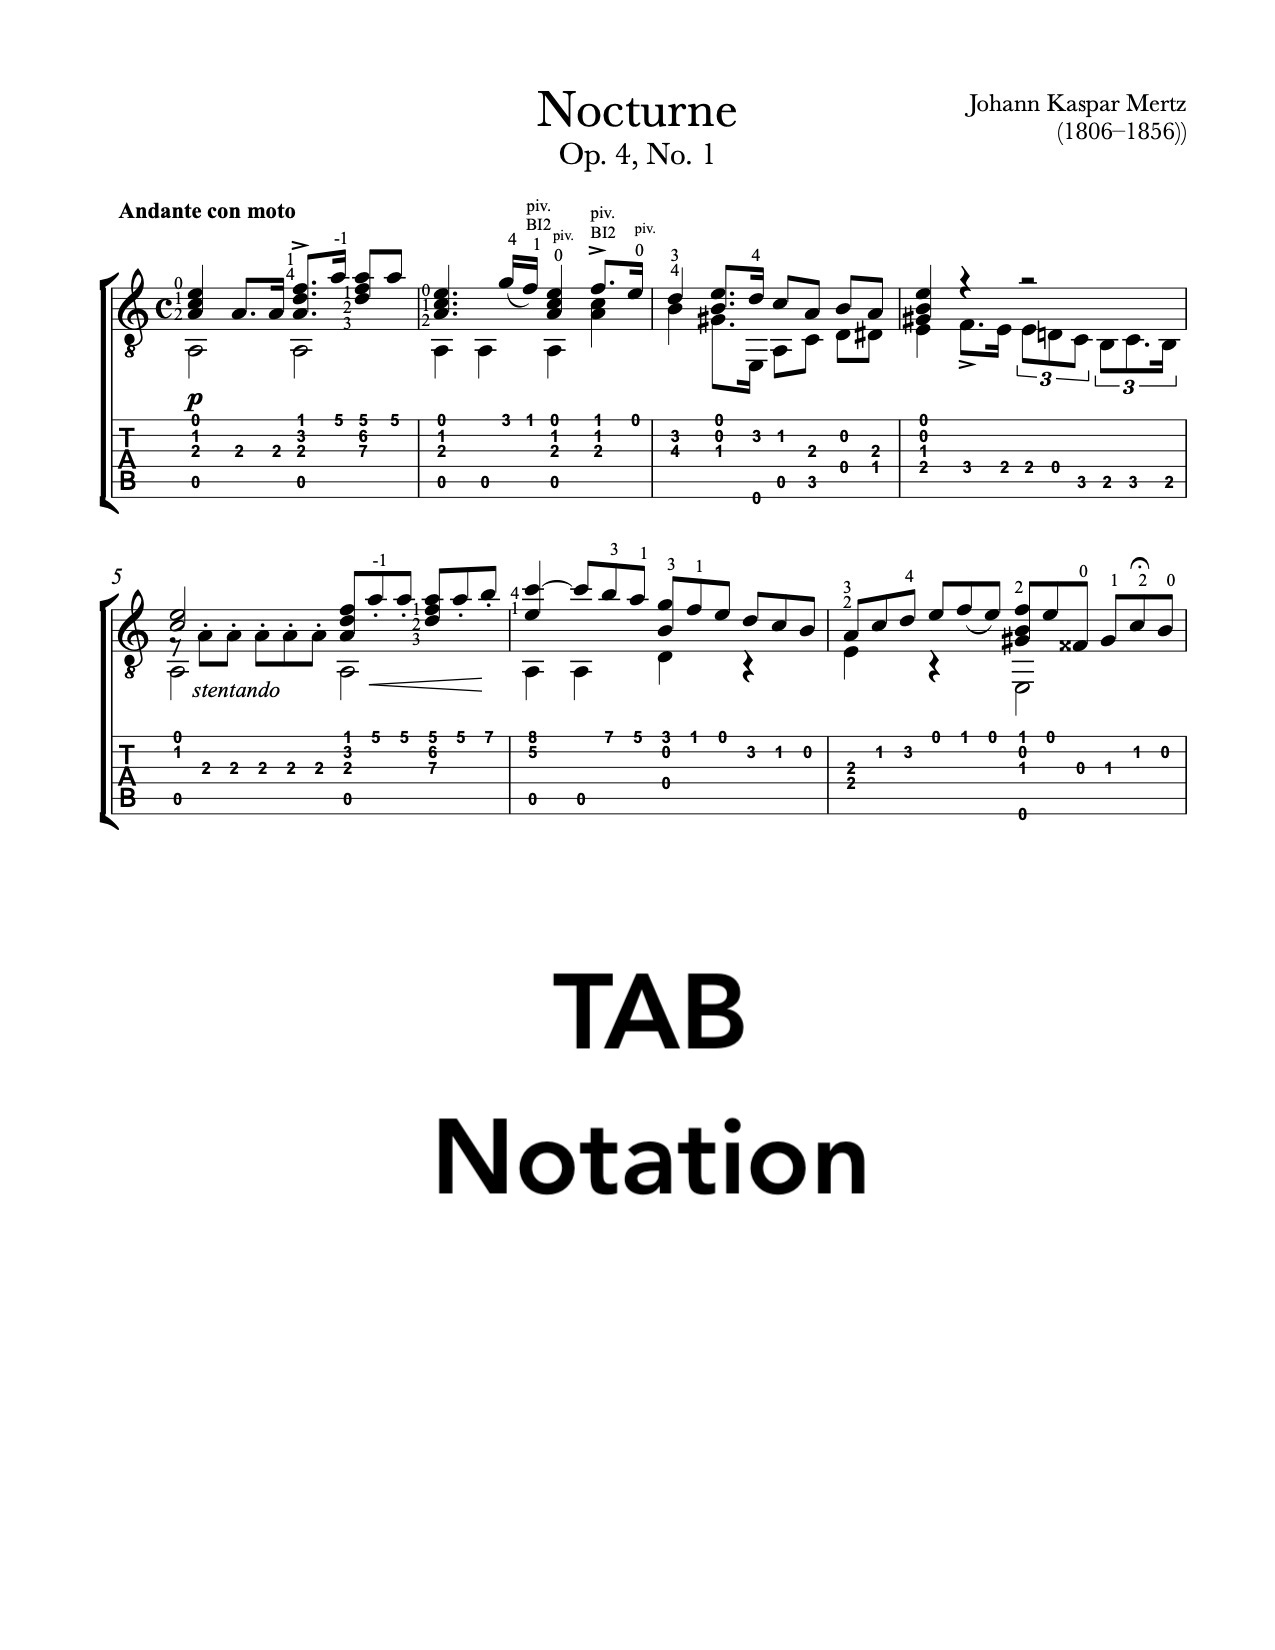 Nocturne No.1, Op.4  by Mertz (Tab Sample)